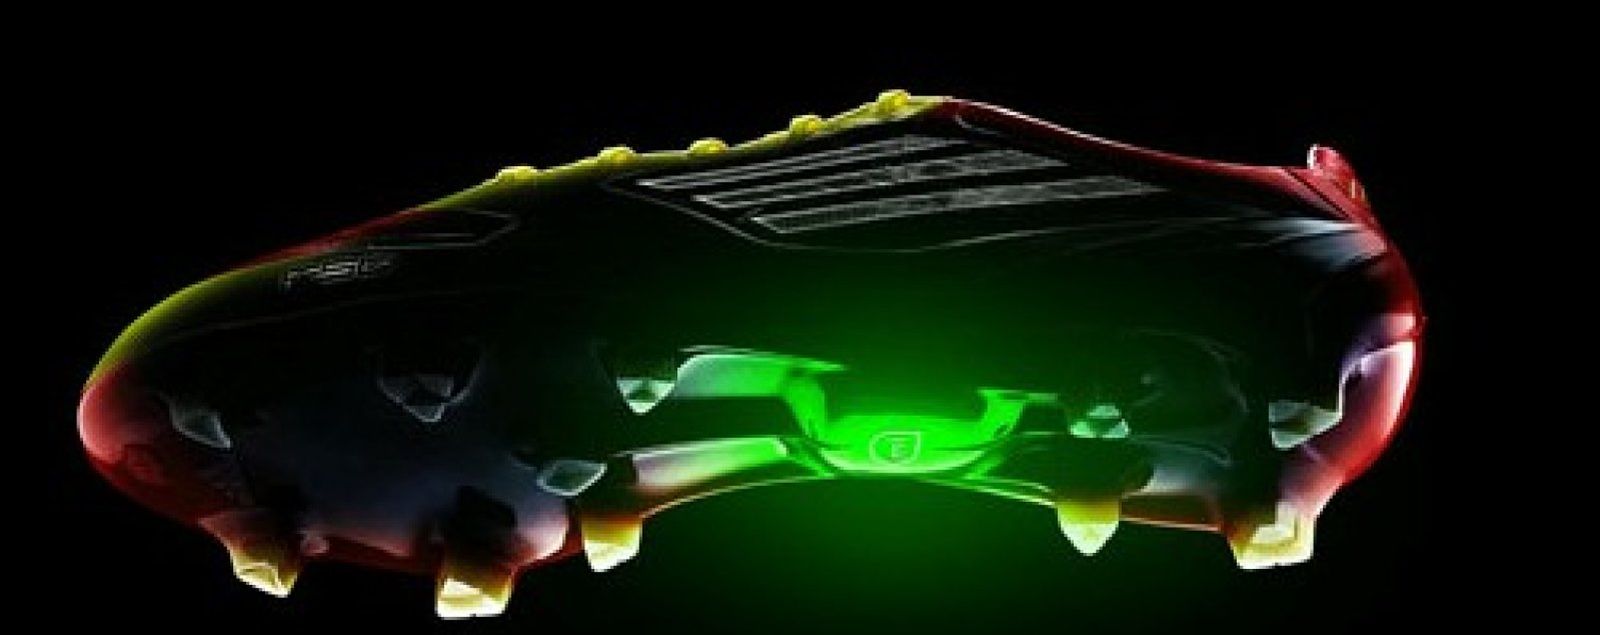 Foto: Las zapatillas 'high tech' de Messi